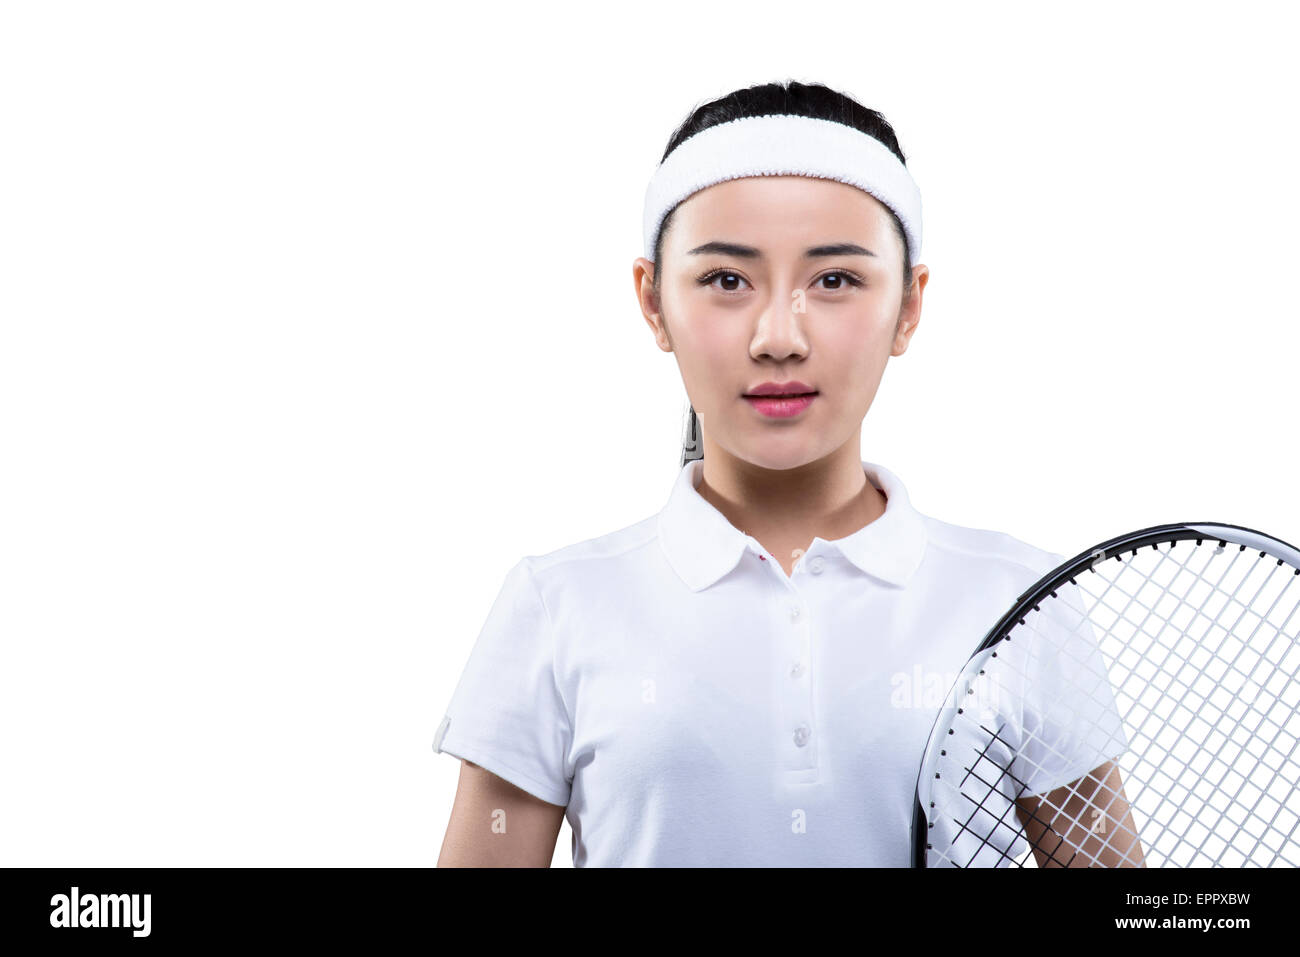 Junge Frau in Tennis-Outfit mit Schläger Stockfoto